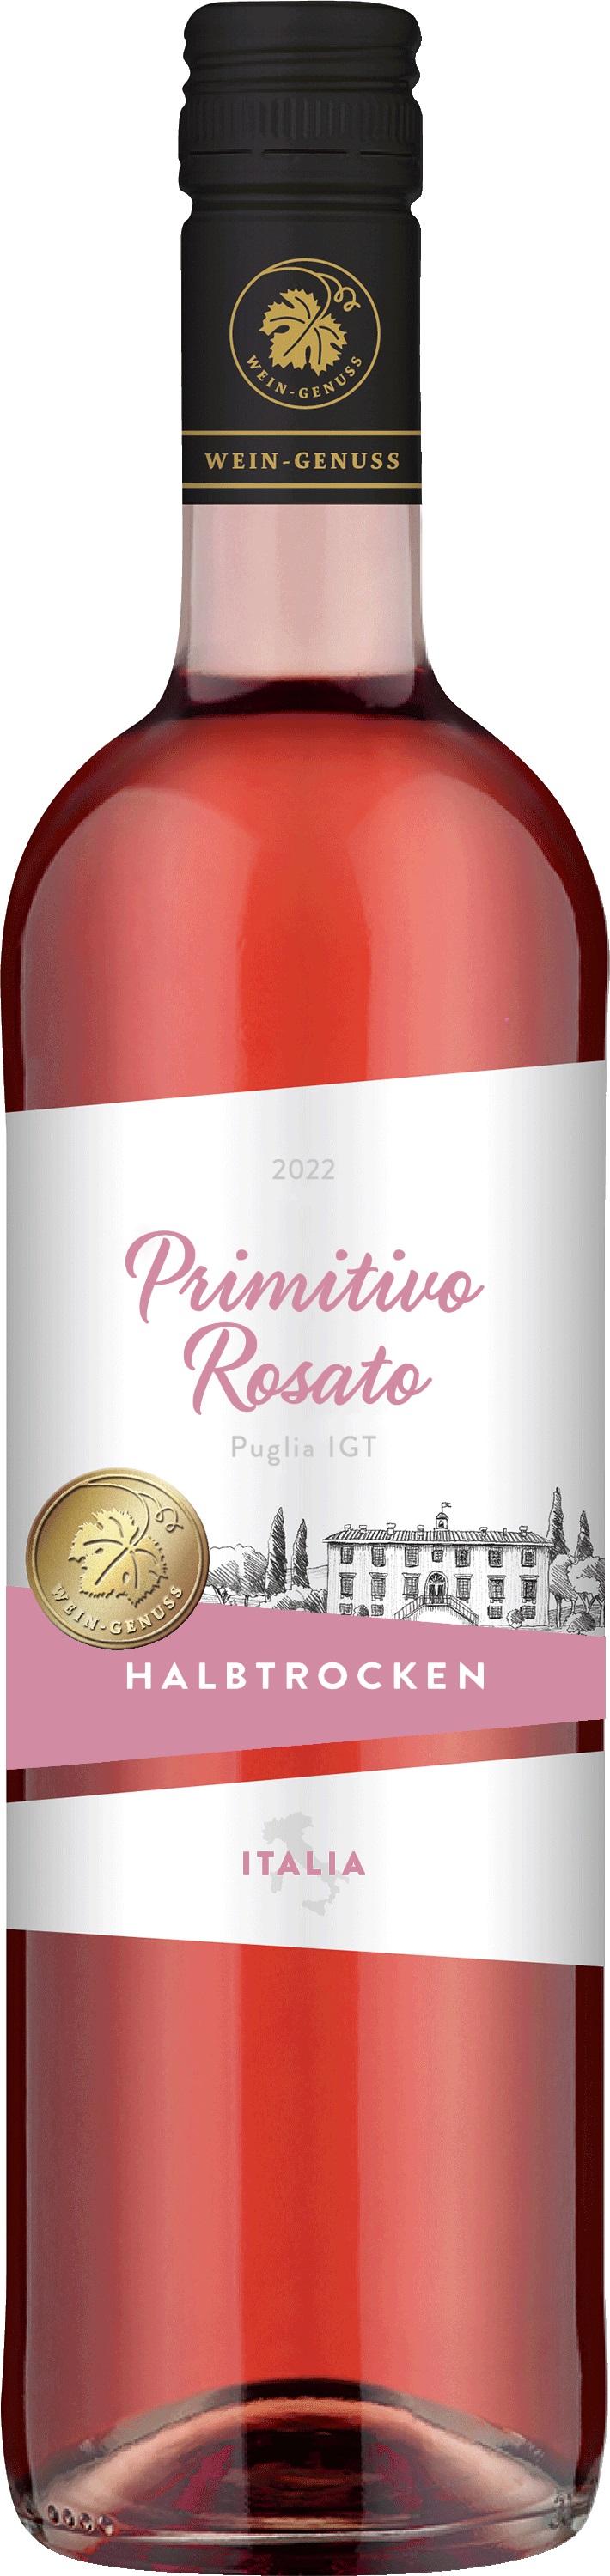 Wein-Genuss Primitivo Rosato Puglia IGT Roséwein